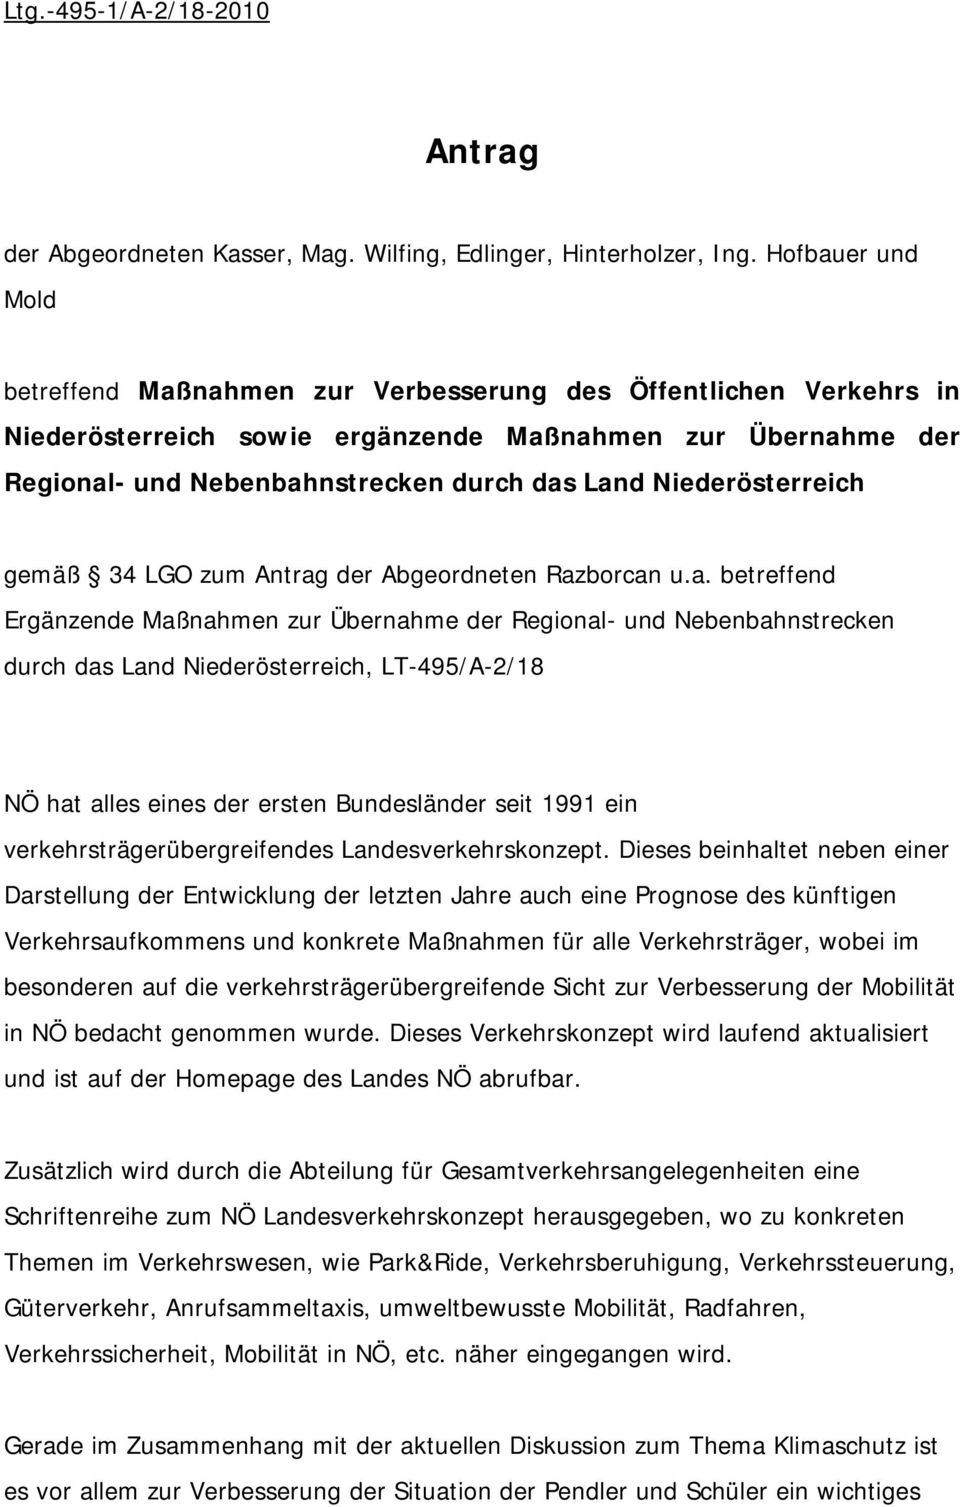 Niederösterreich gemäß 34 LGO zum Antrag